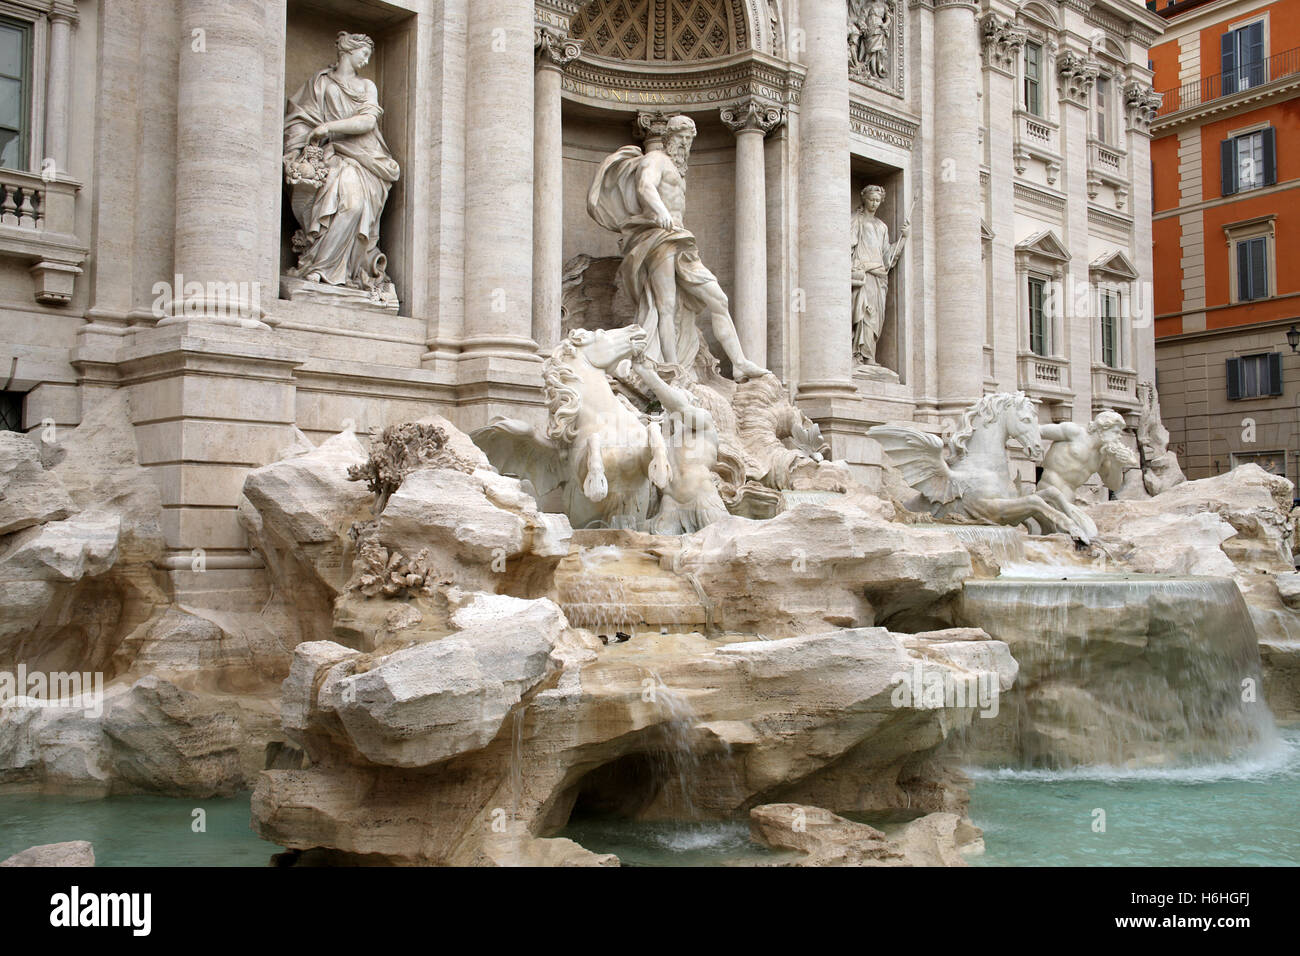 La fontaine la plus célèbre au monde - la Fontaine de Trevi à Rome, Italie Banque D'Images